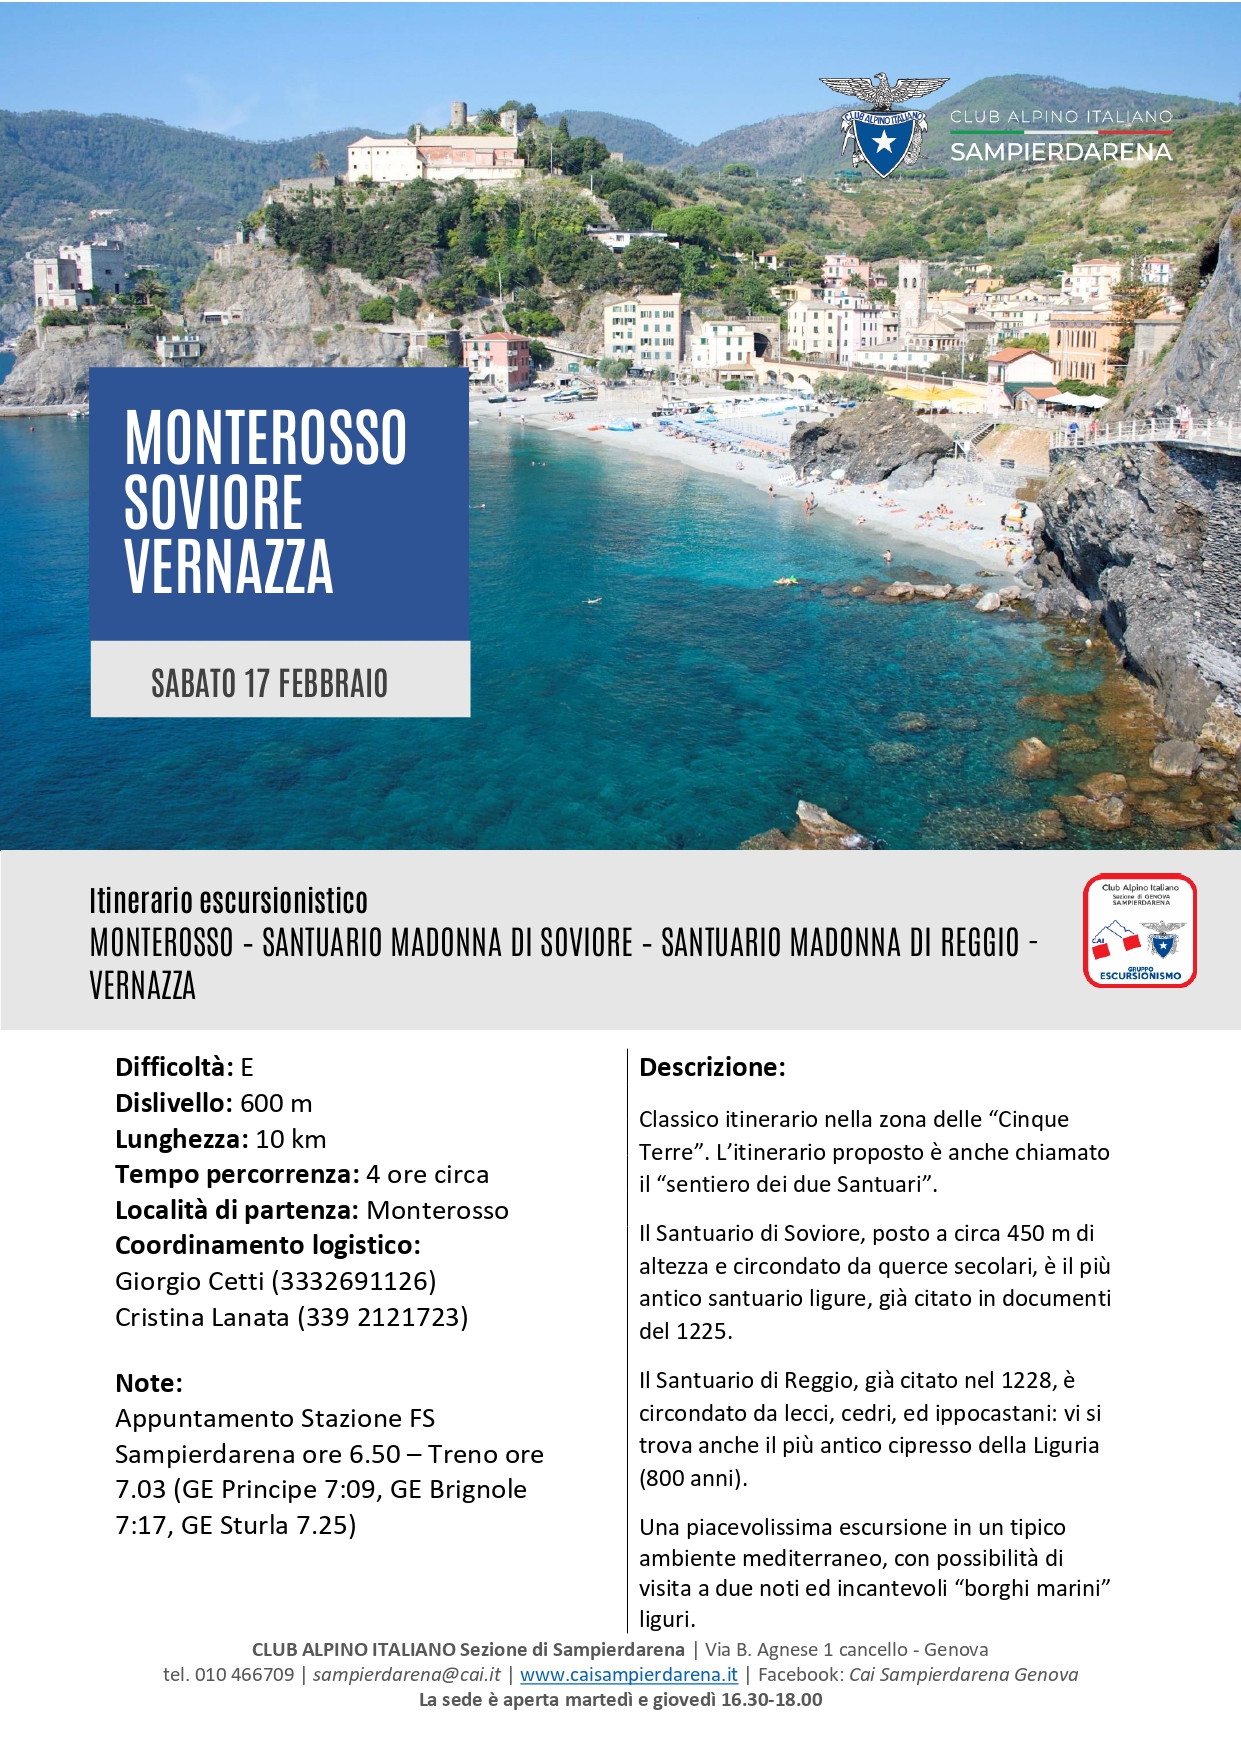 Sabato 17 Febbraio – Escursionismo – Monterosso-Soviore-Vernazza